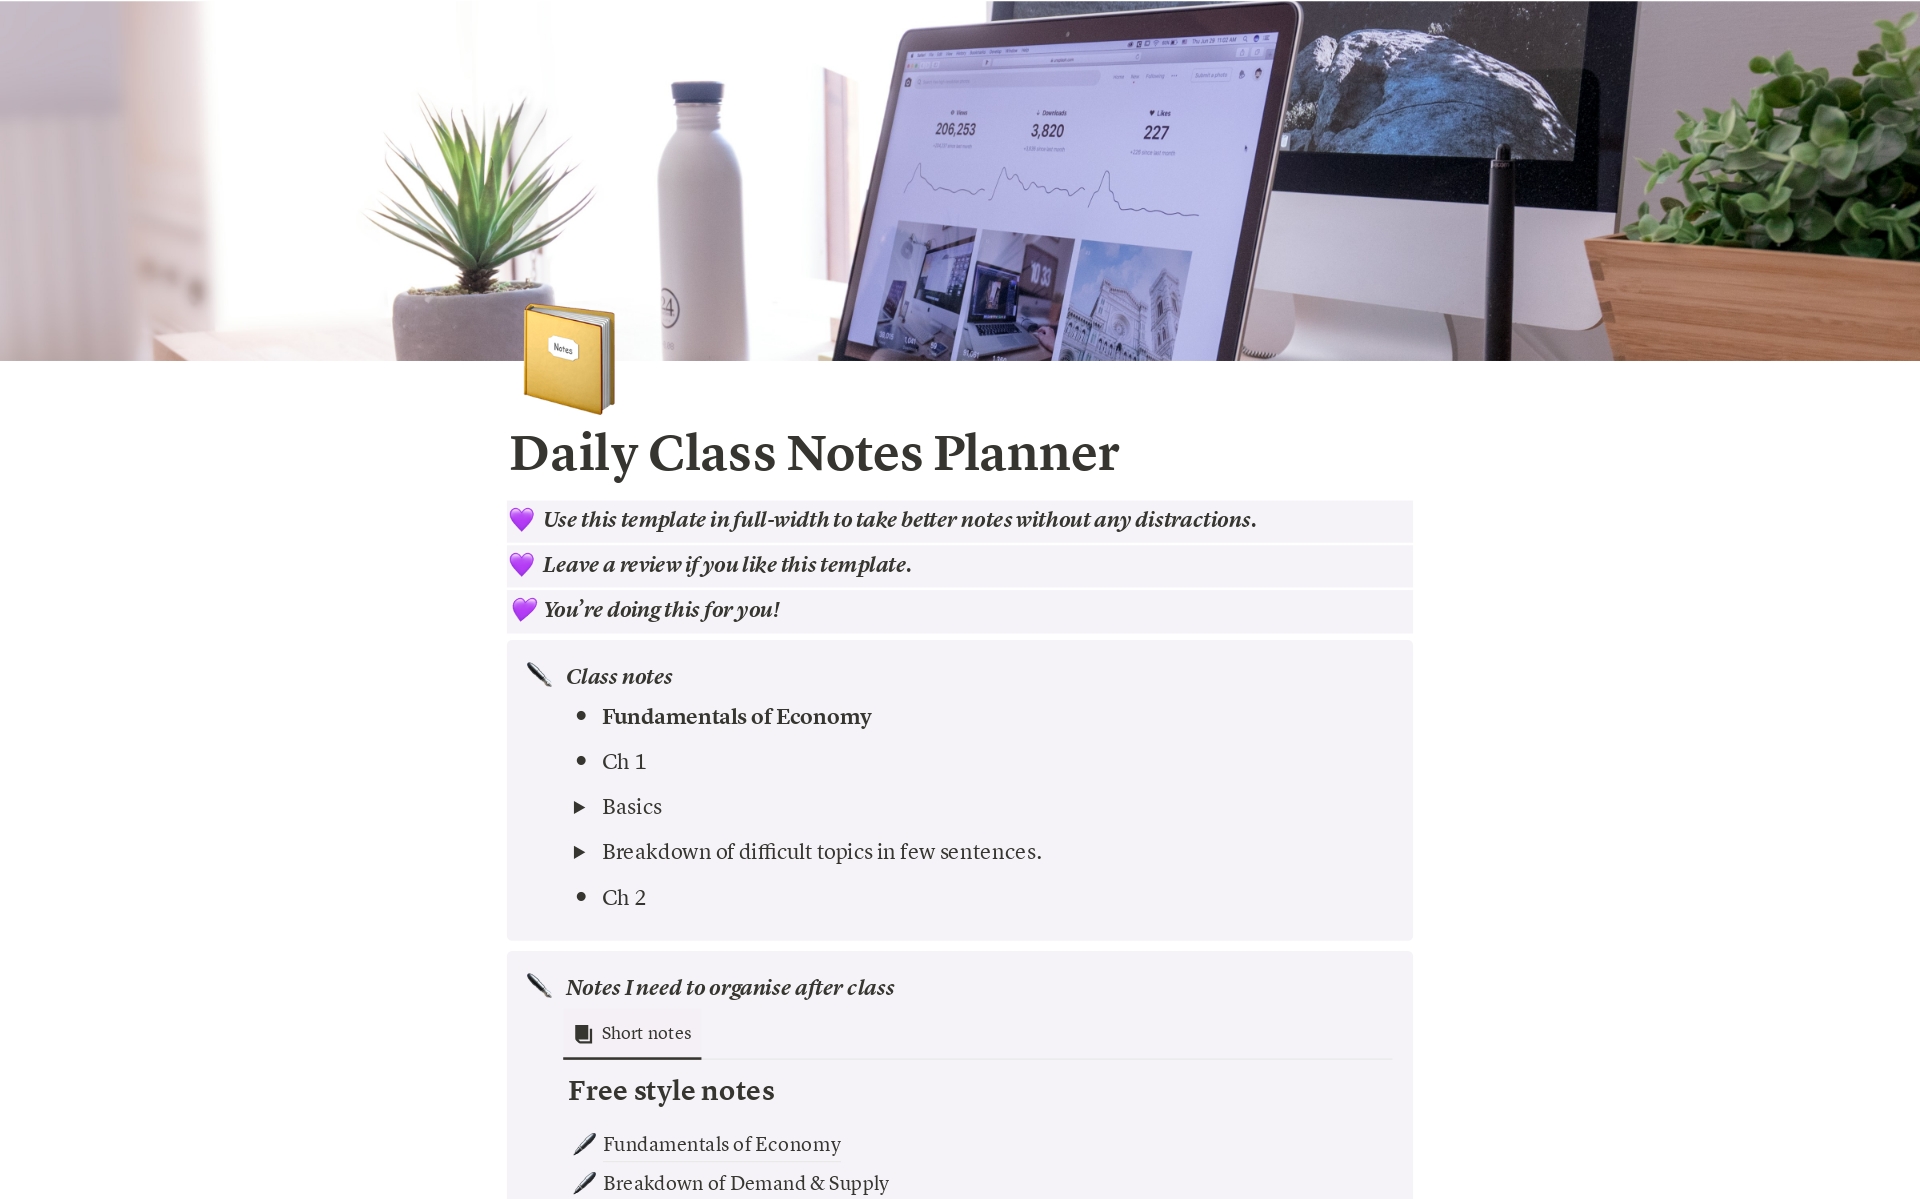 Uma prévia do modelo para Daily Class Notes Planner